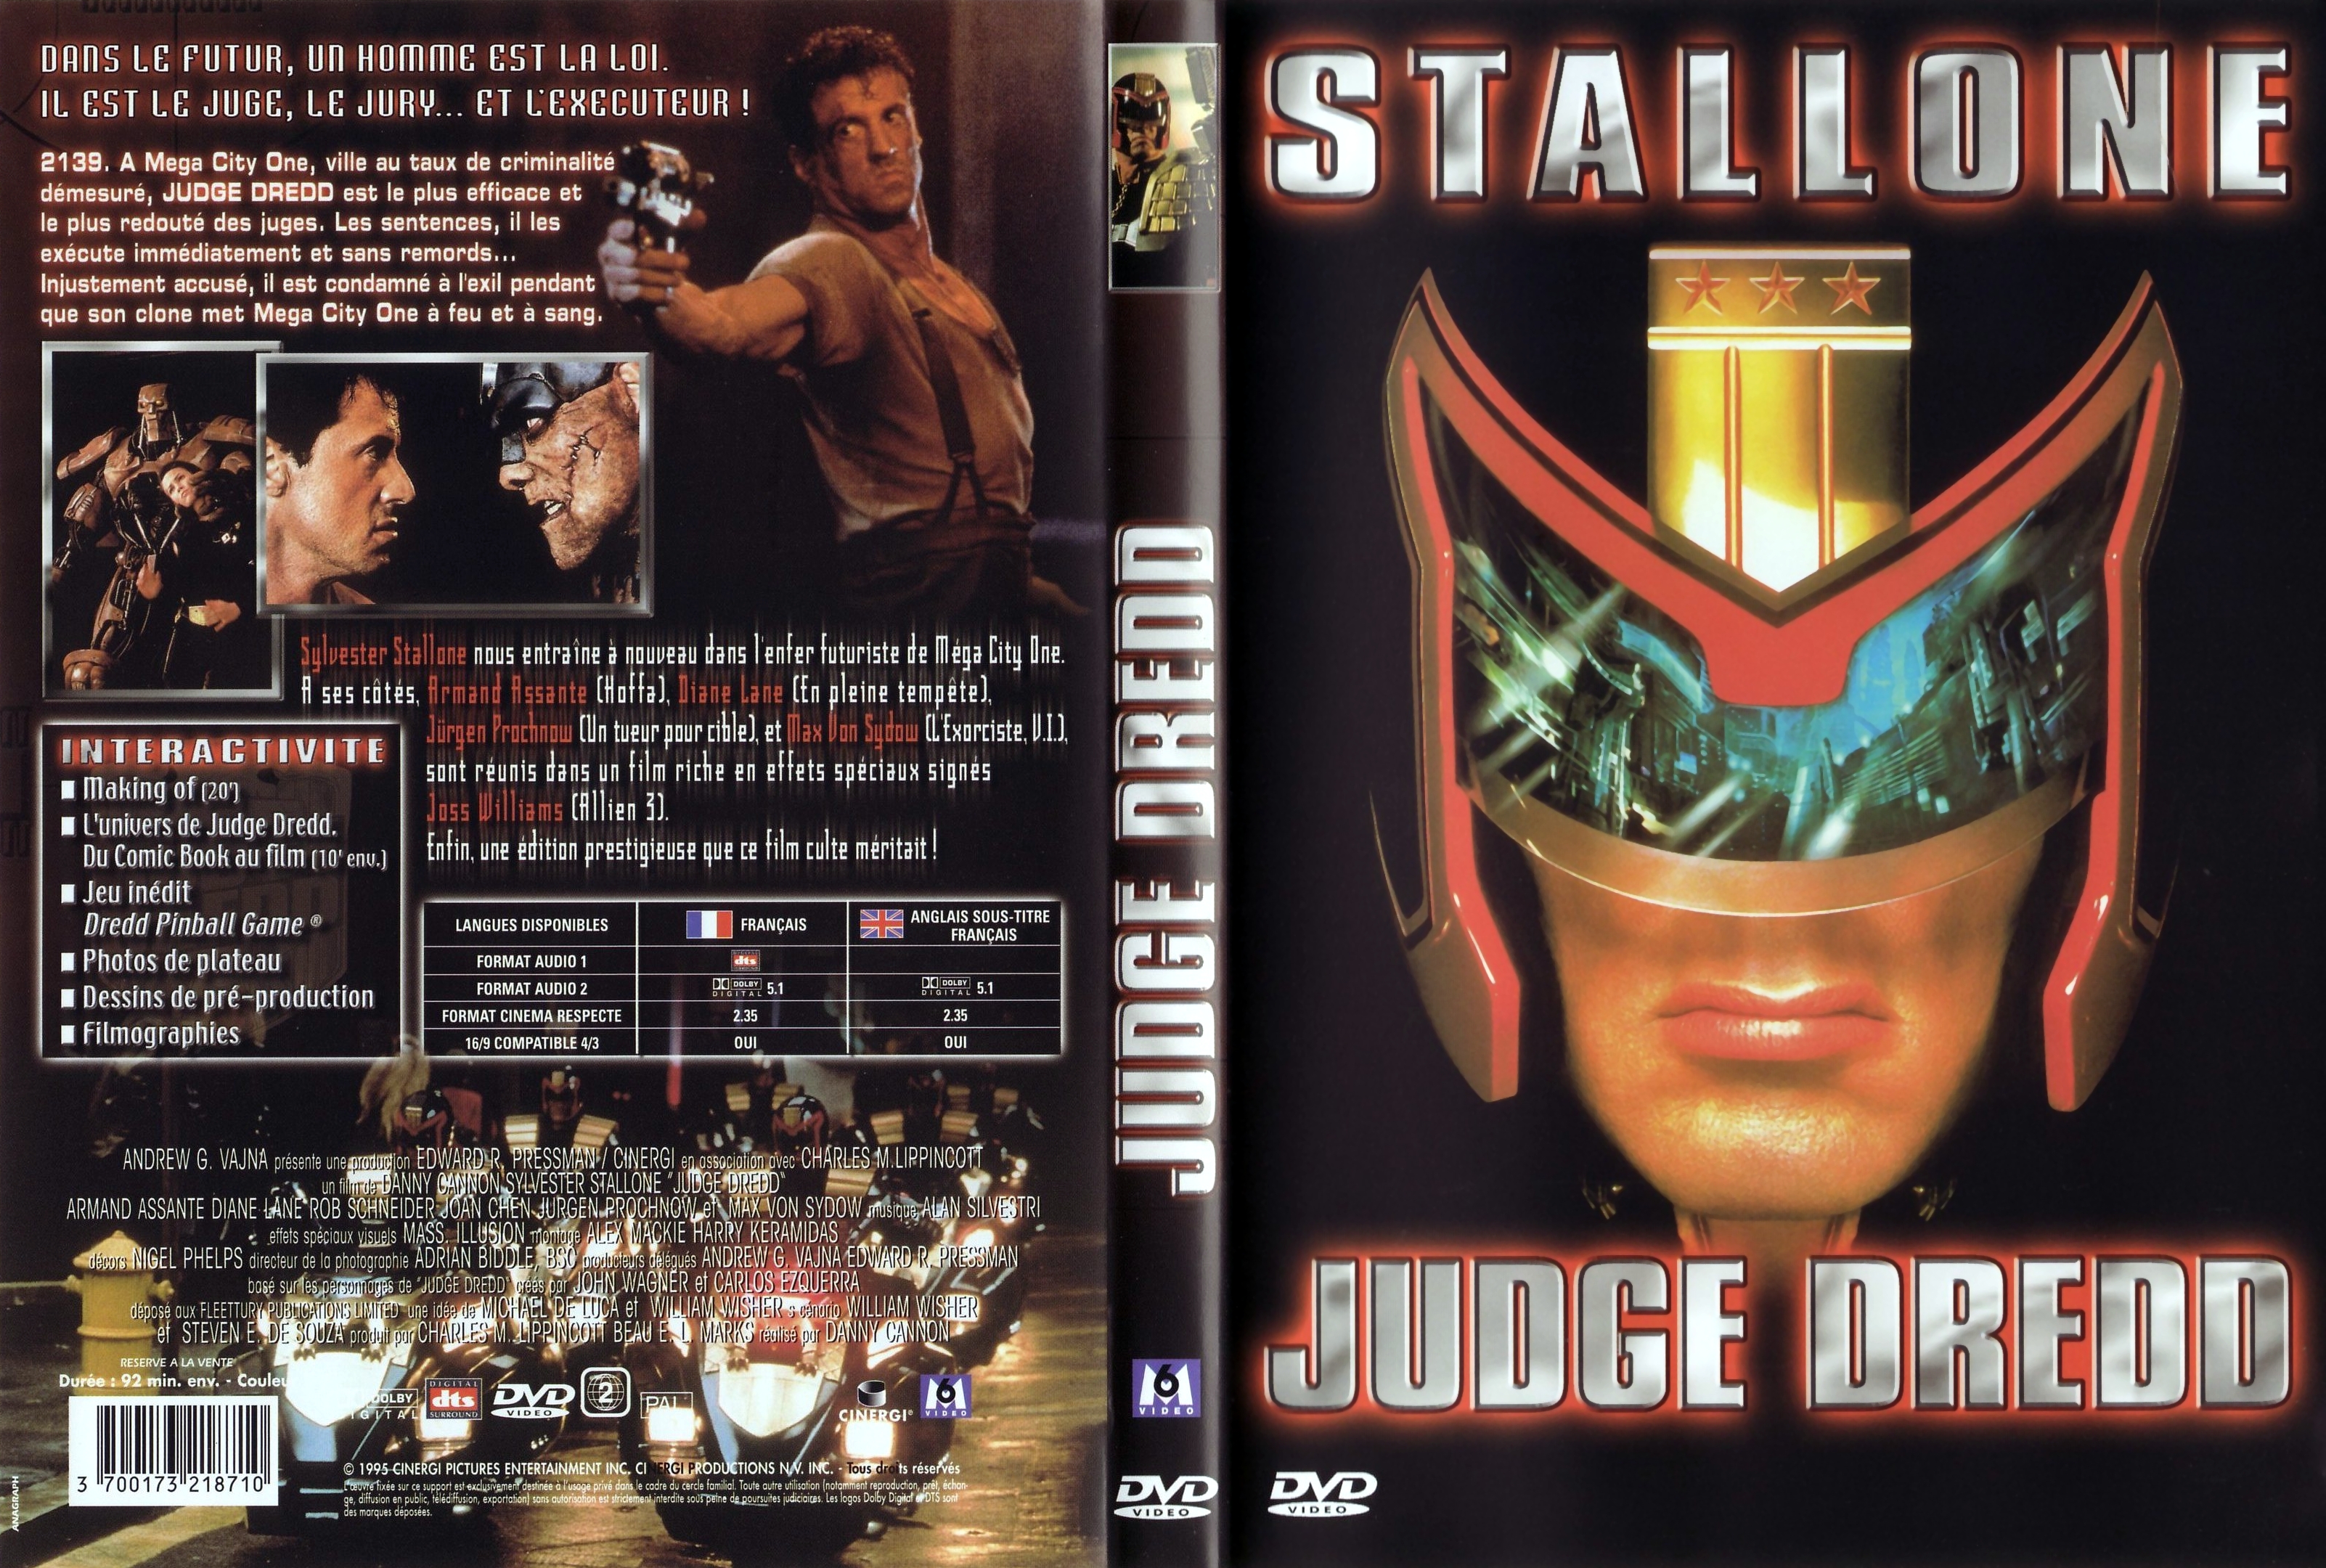 Jaquette DVD Judge Dredd v3